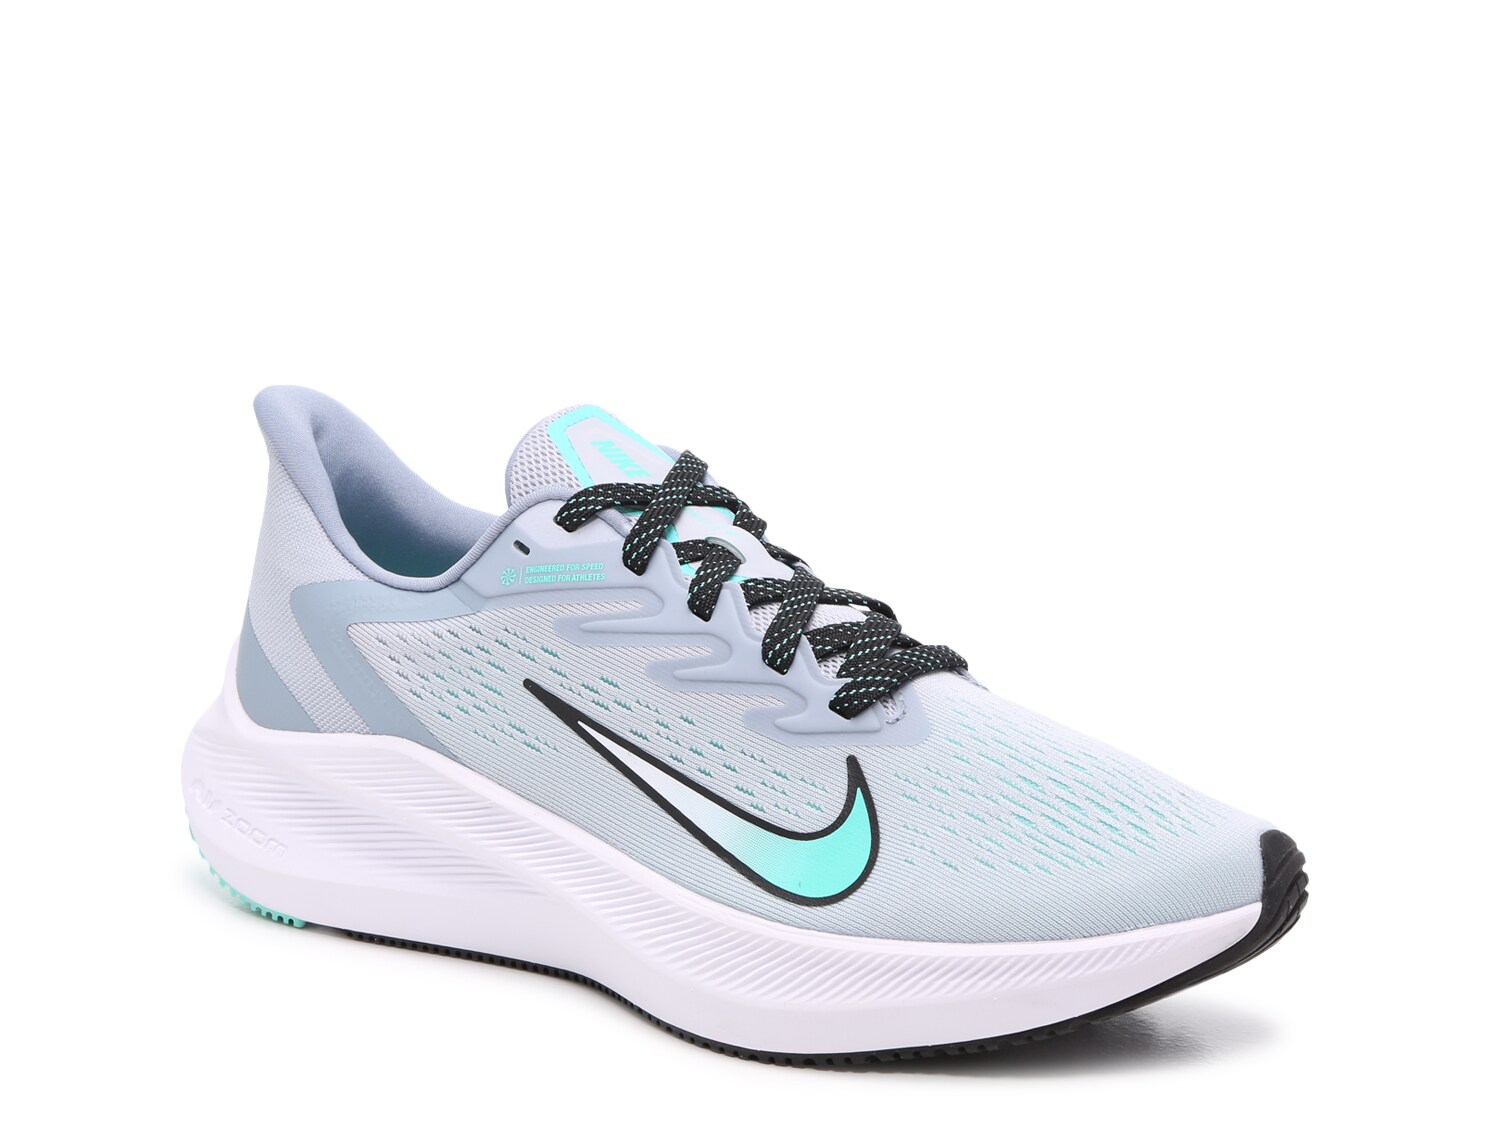 Nike Zoom Winflo 7 Running Shoe - Women's - Free Shipping | DSW